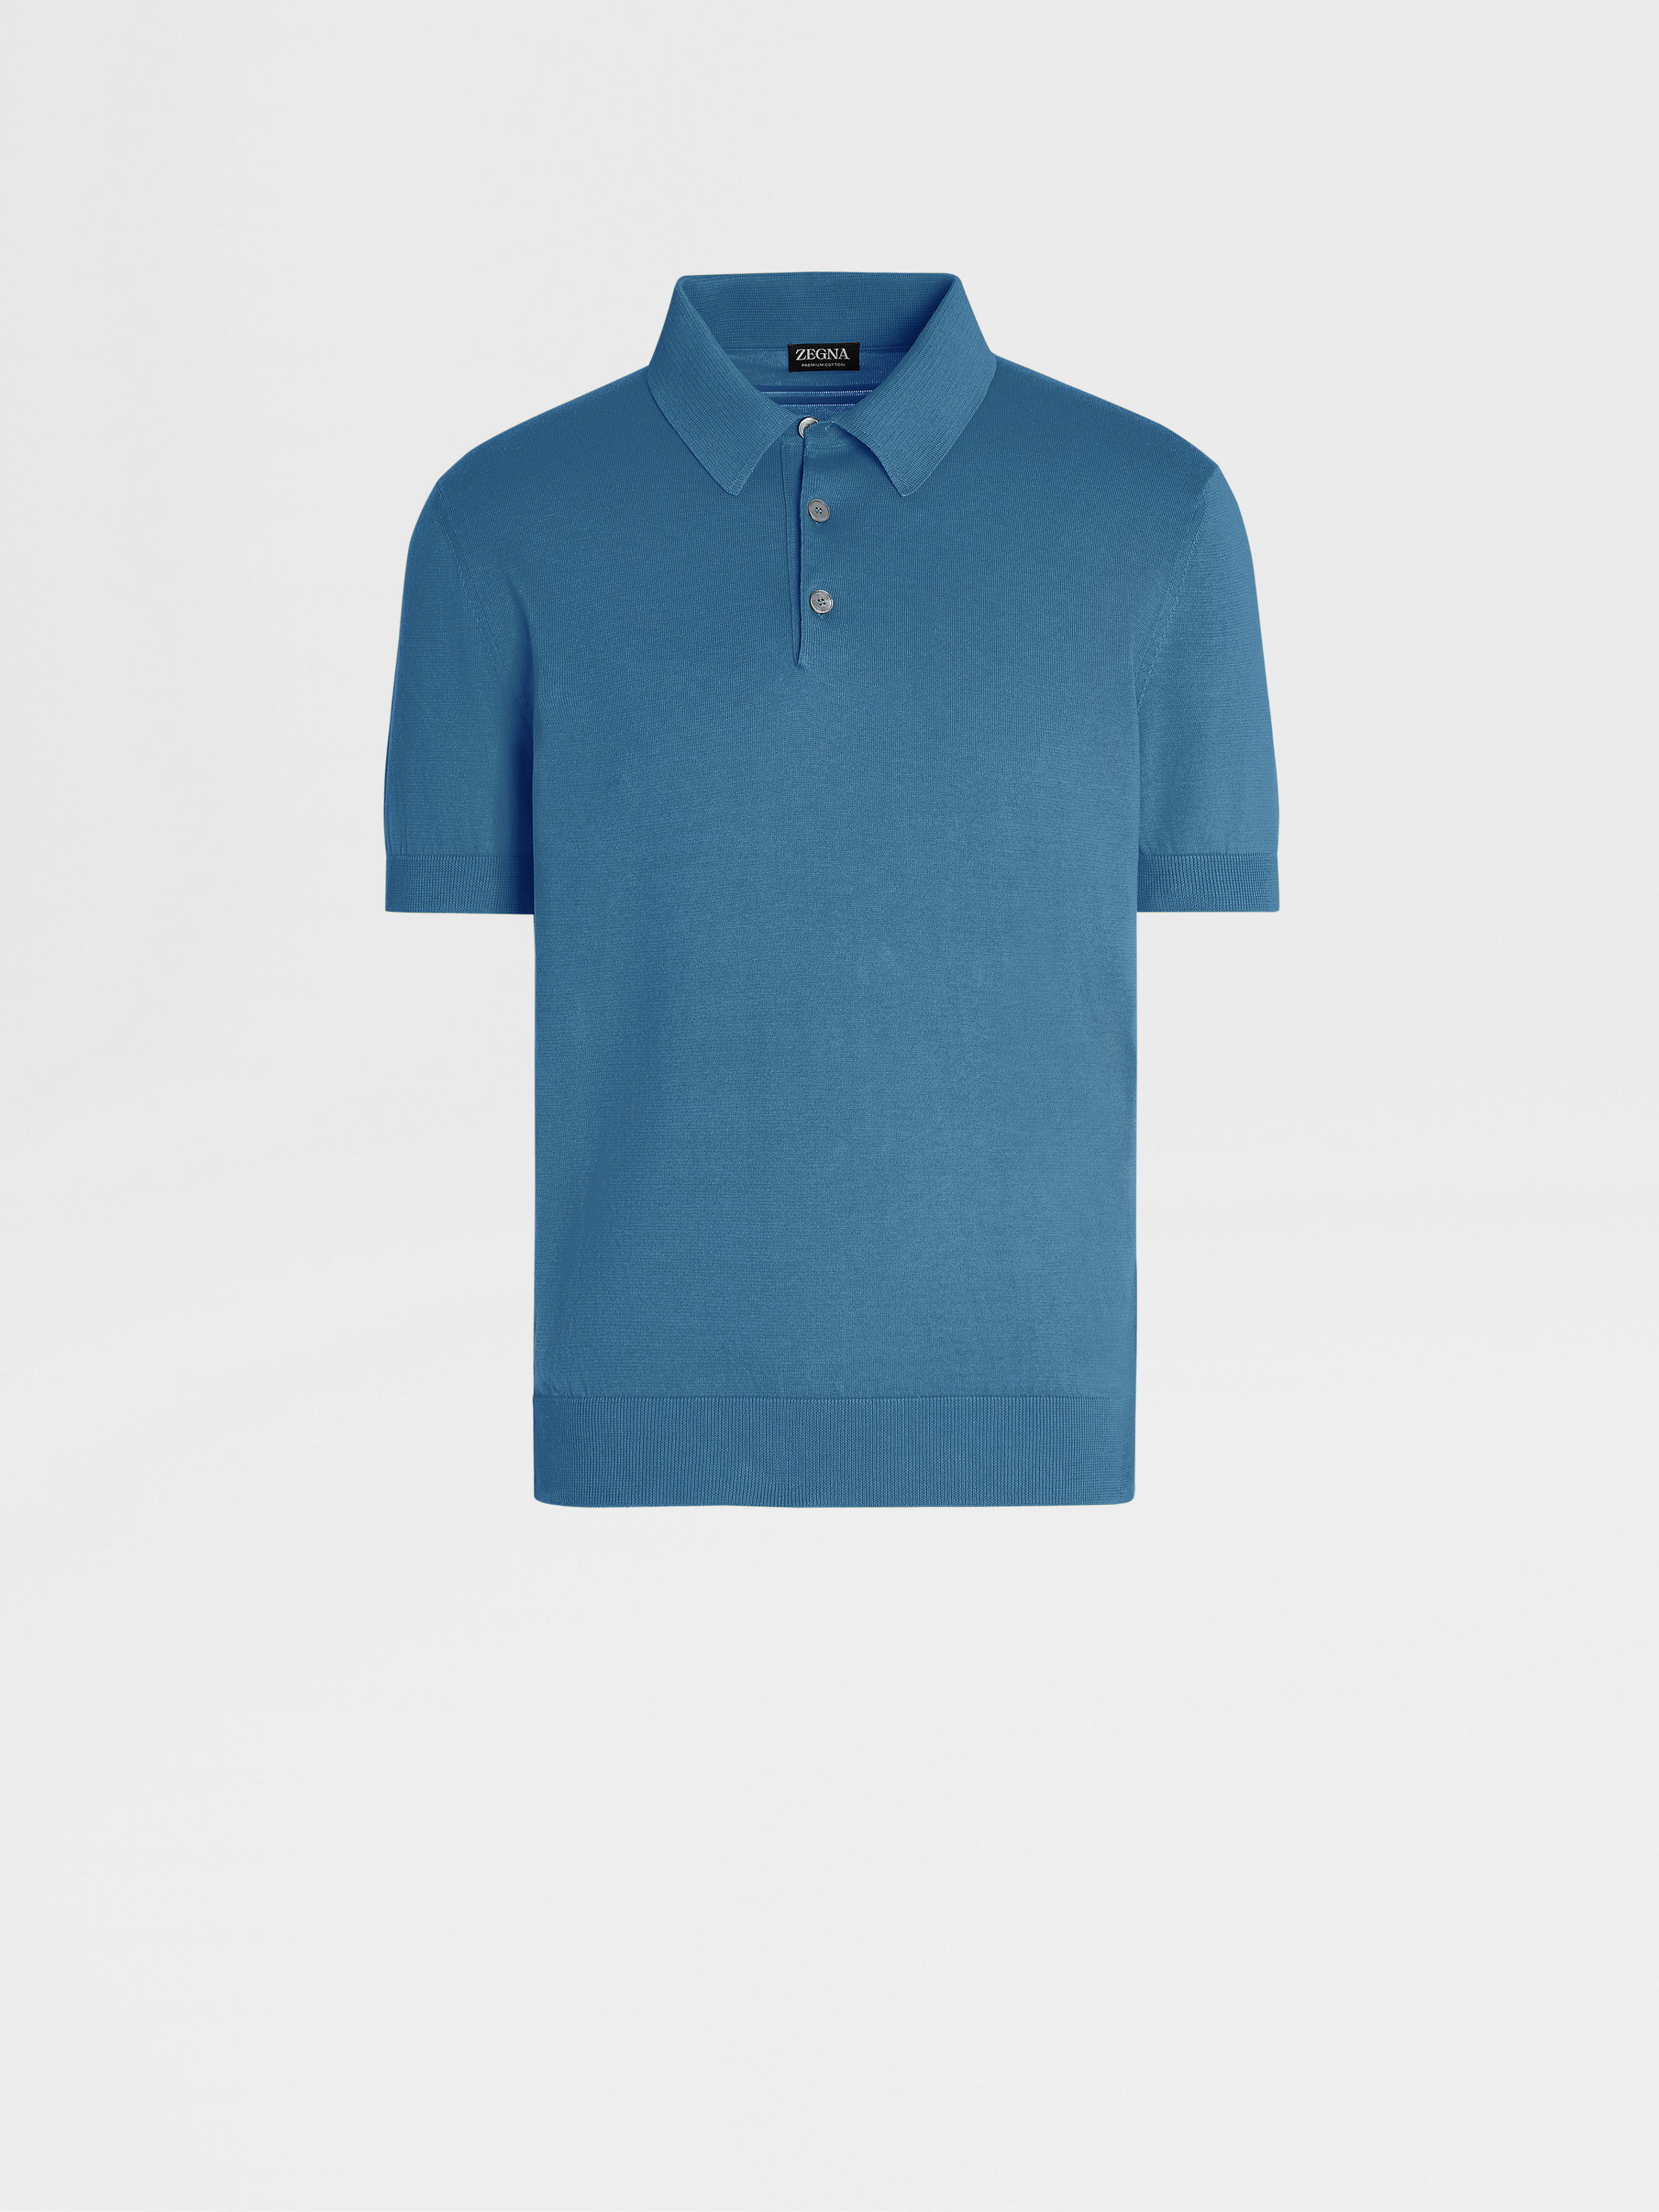 蓝绿色 Premium Cotton Polo 衫